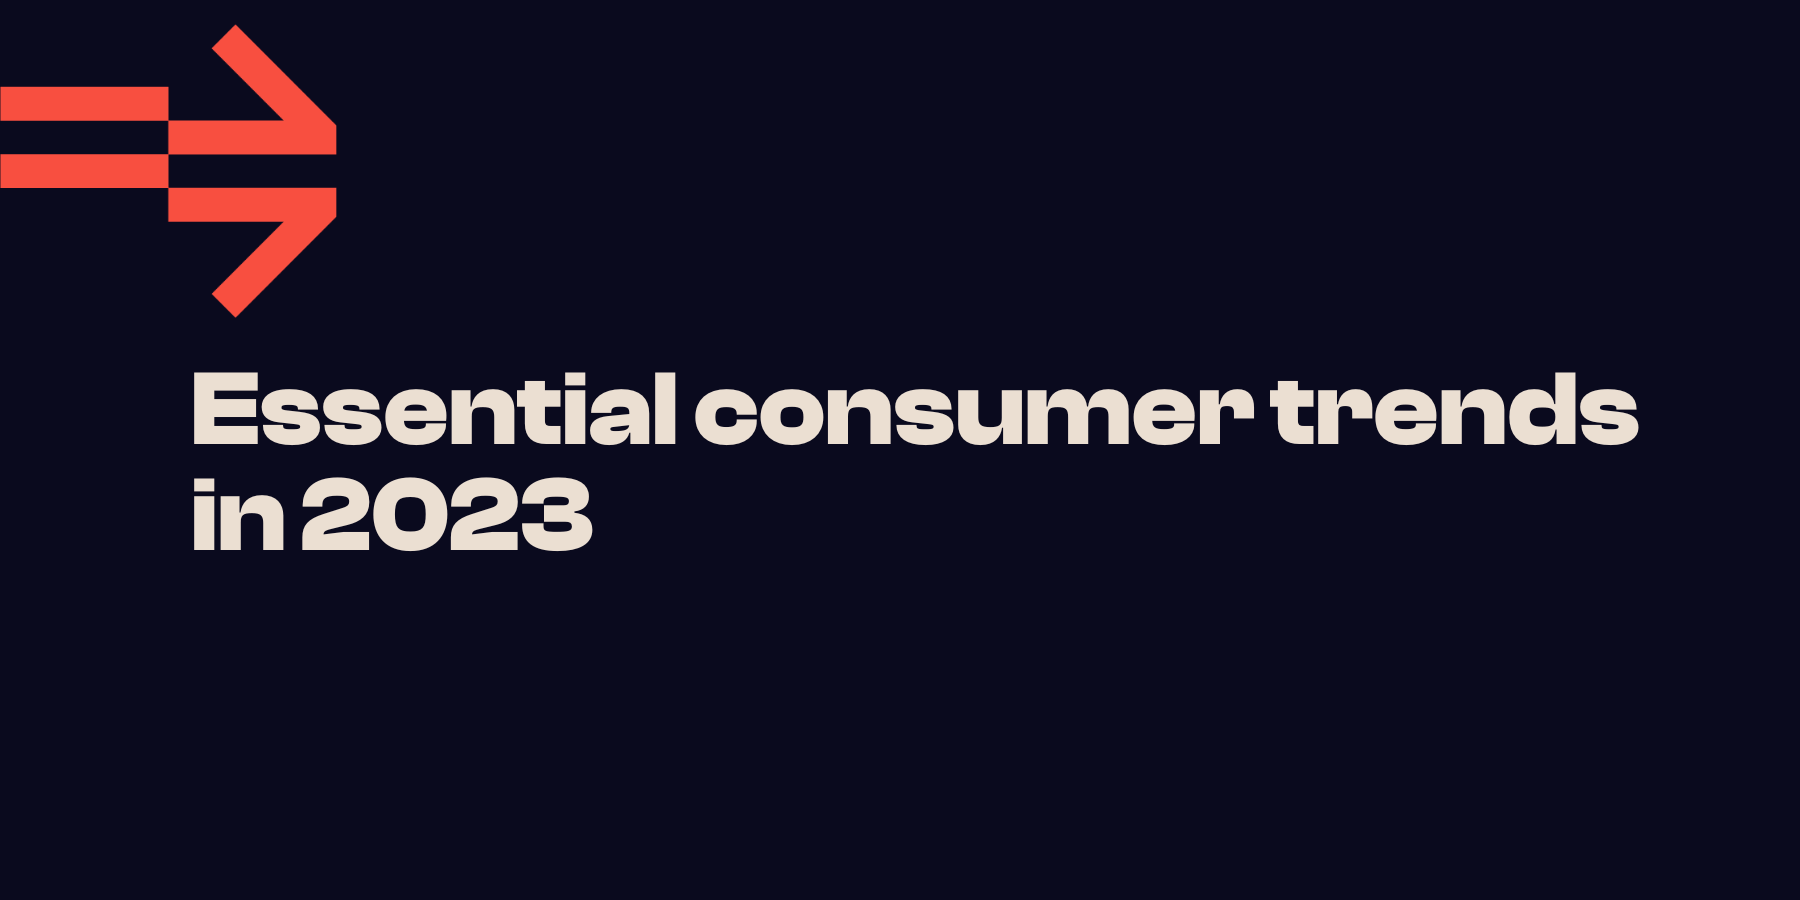 Essential consumer trends in 2023